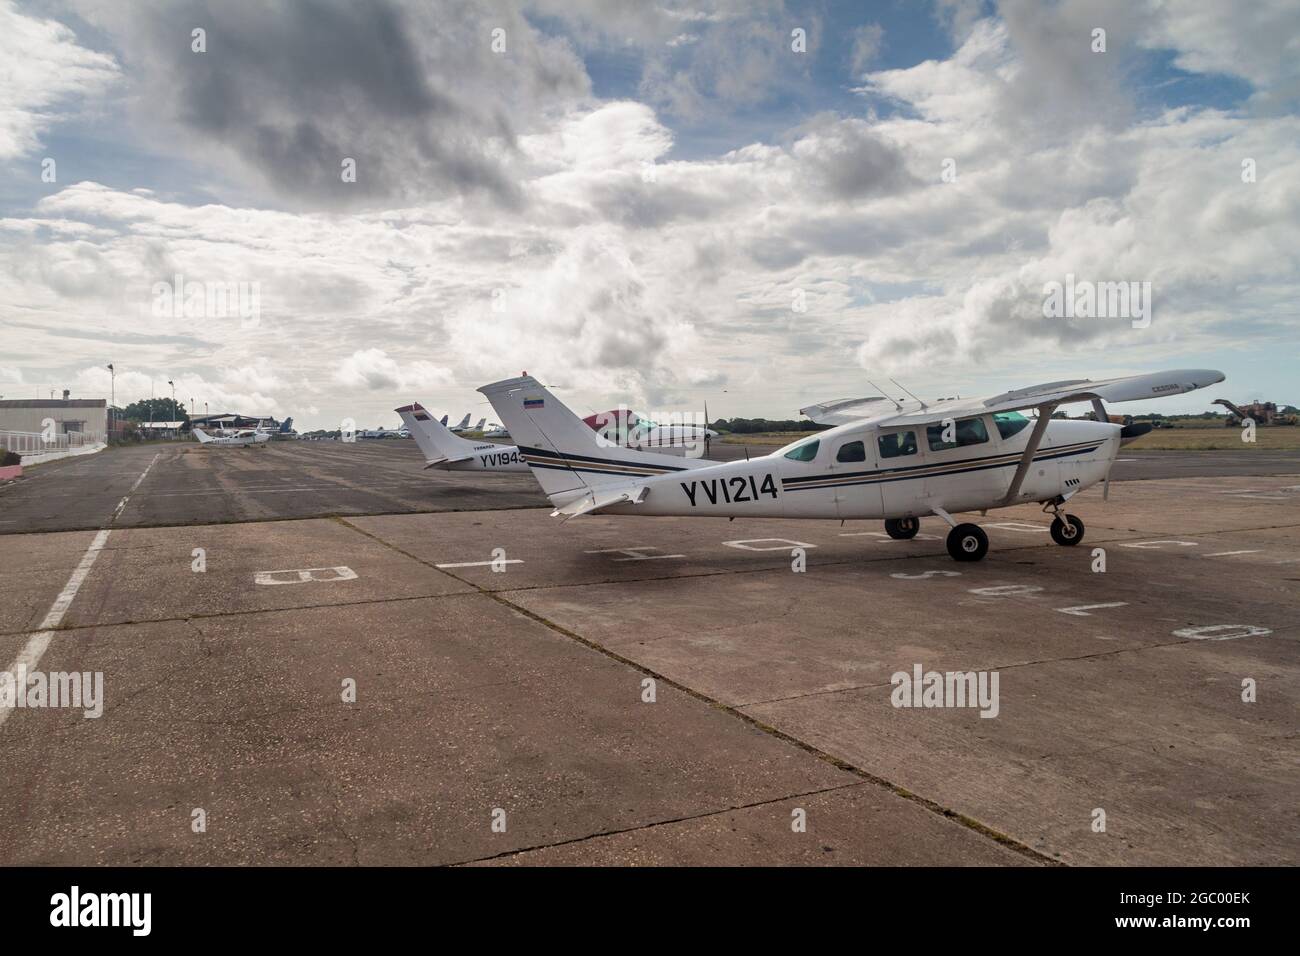 CIUDAD BOLIVAR, VENEZUELA - AUGUST 16, 2015: Cessna airplanes at the airport of Ciudad Bolivar, Venezuela Stock Photo